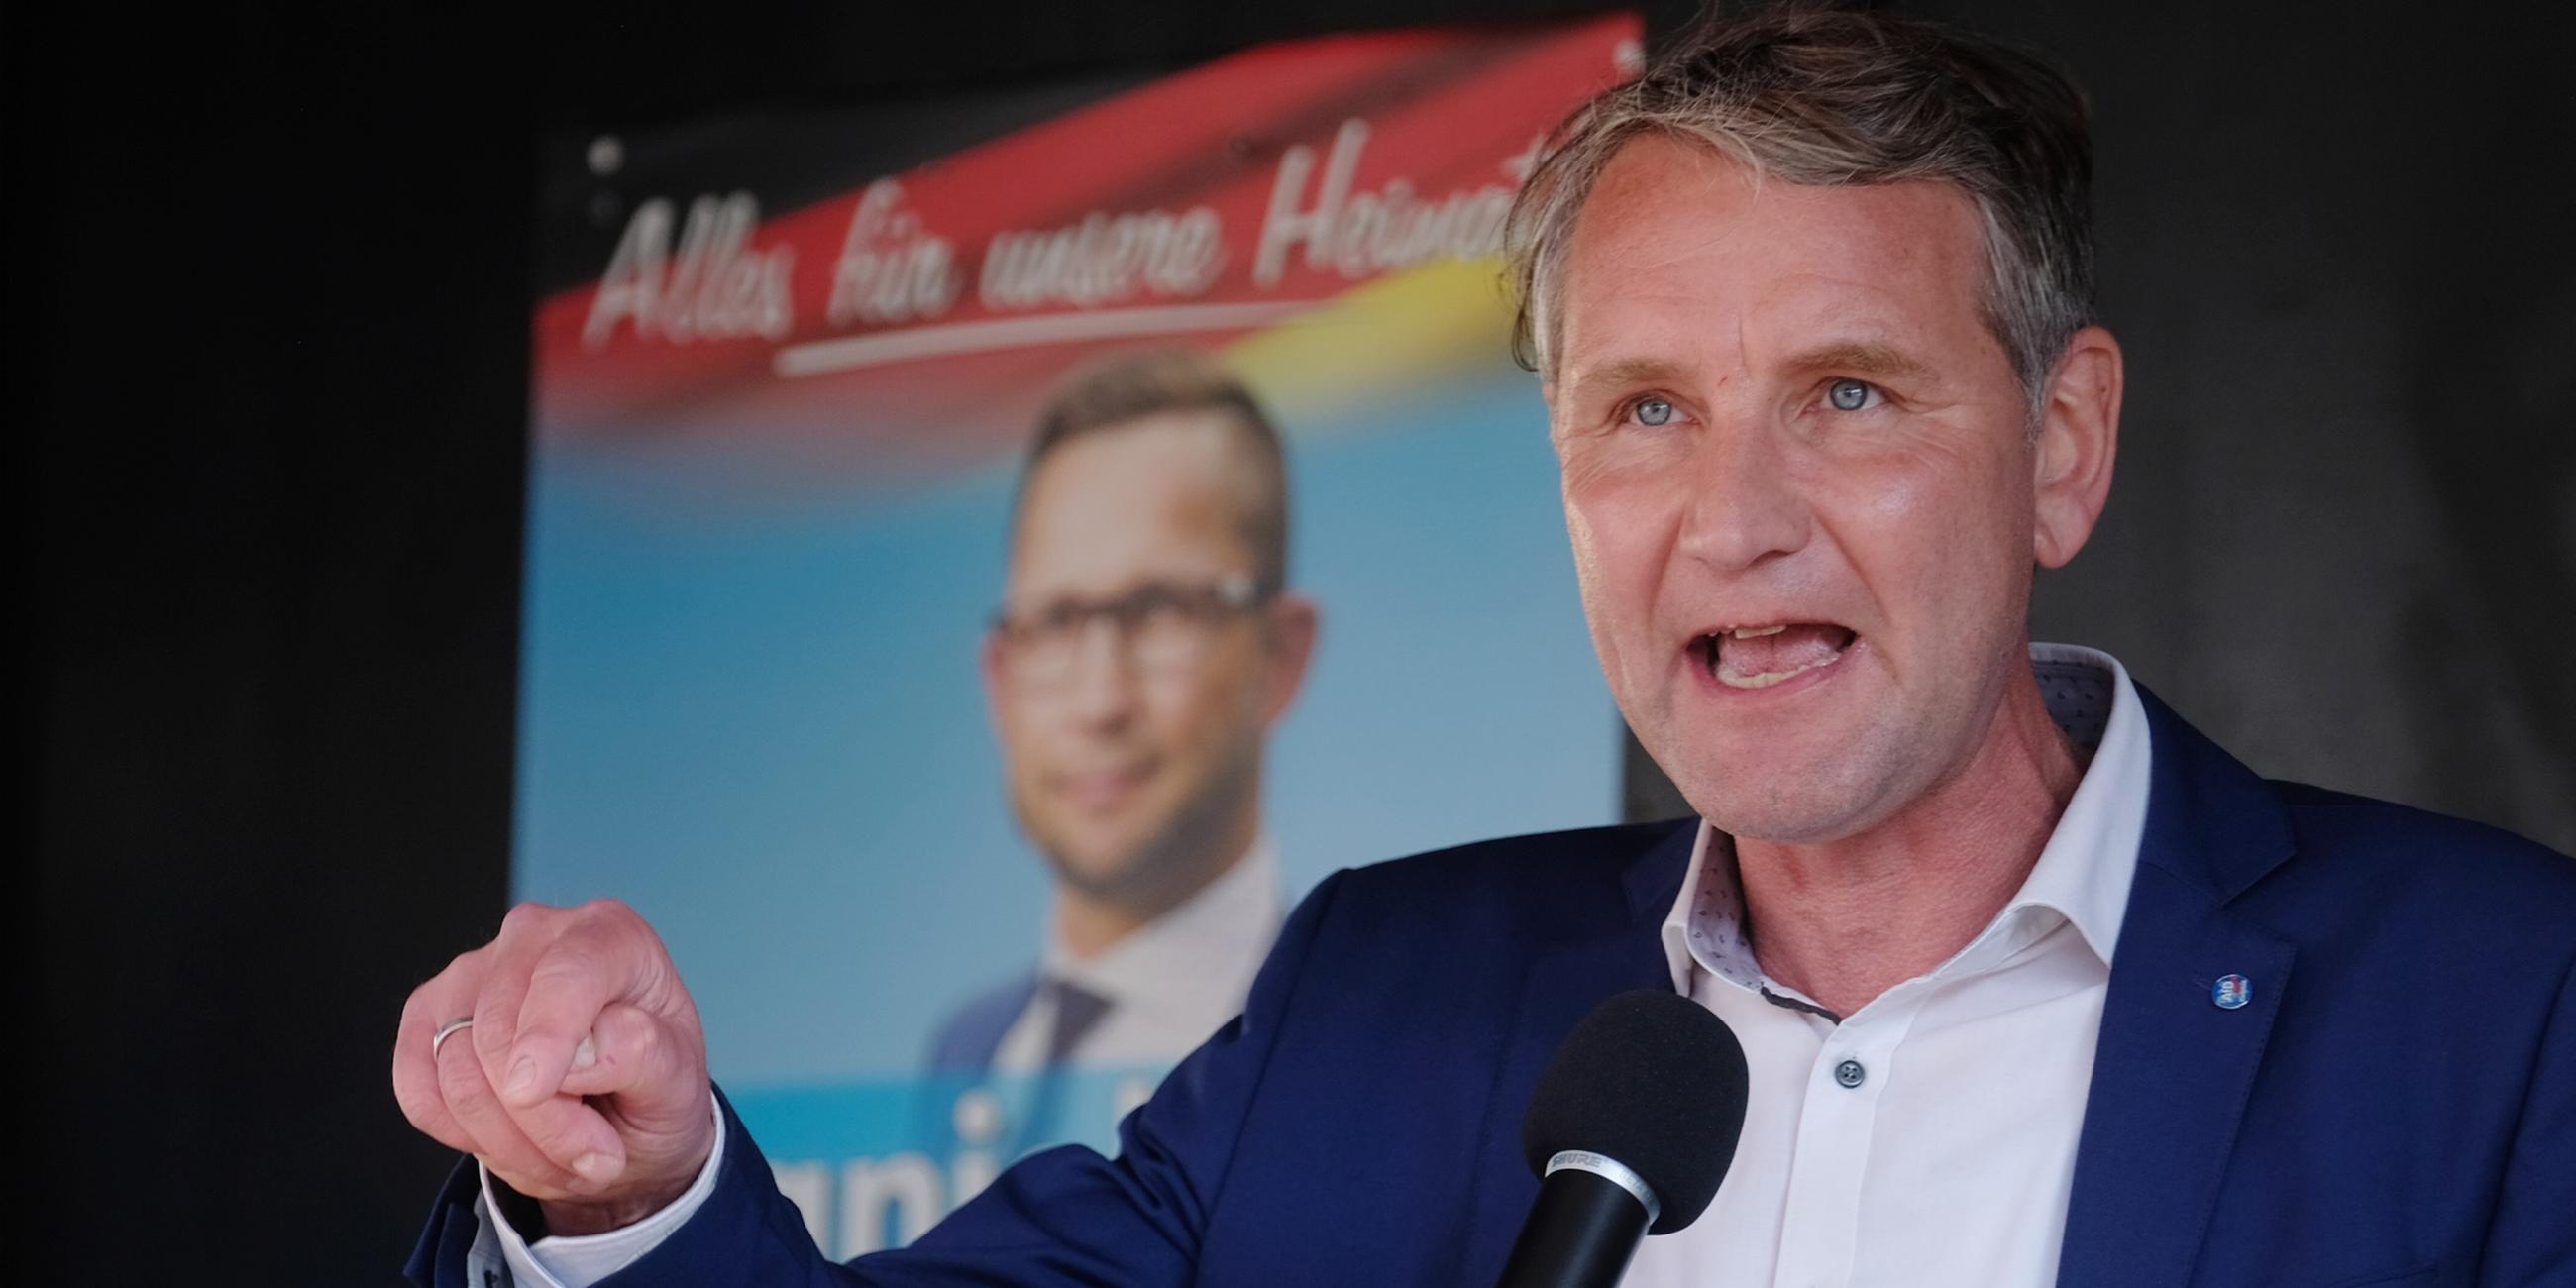 Archiv: Björn Höcke (AfD), Fraktionsvorsitzender der AfD-Thüringen, spricht während einer Wahlkampfveranstaltung. Am 29.05.2021